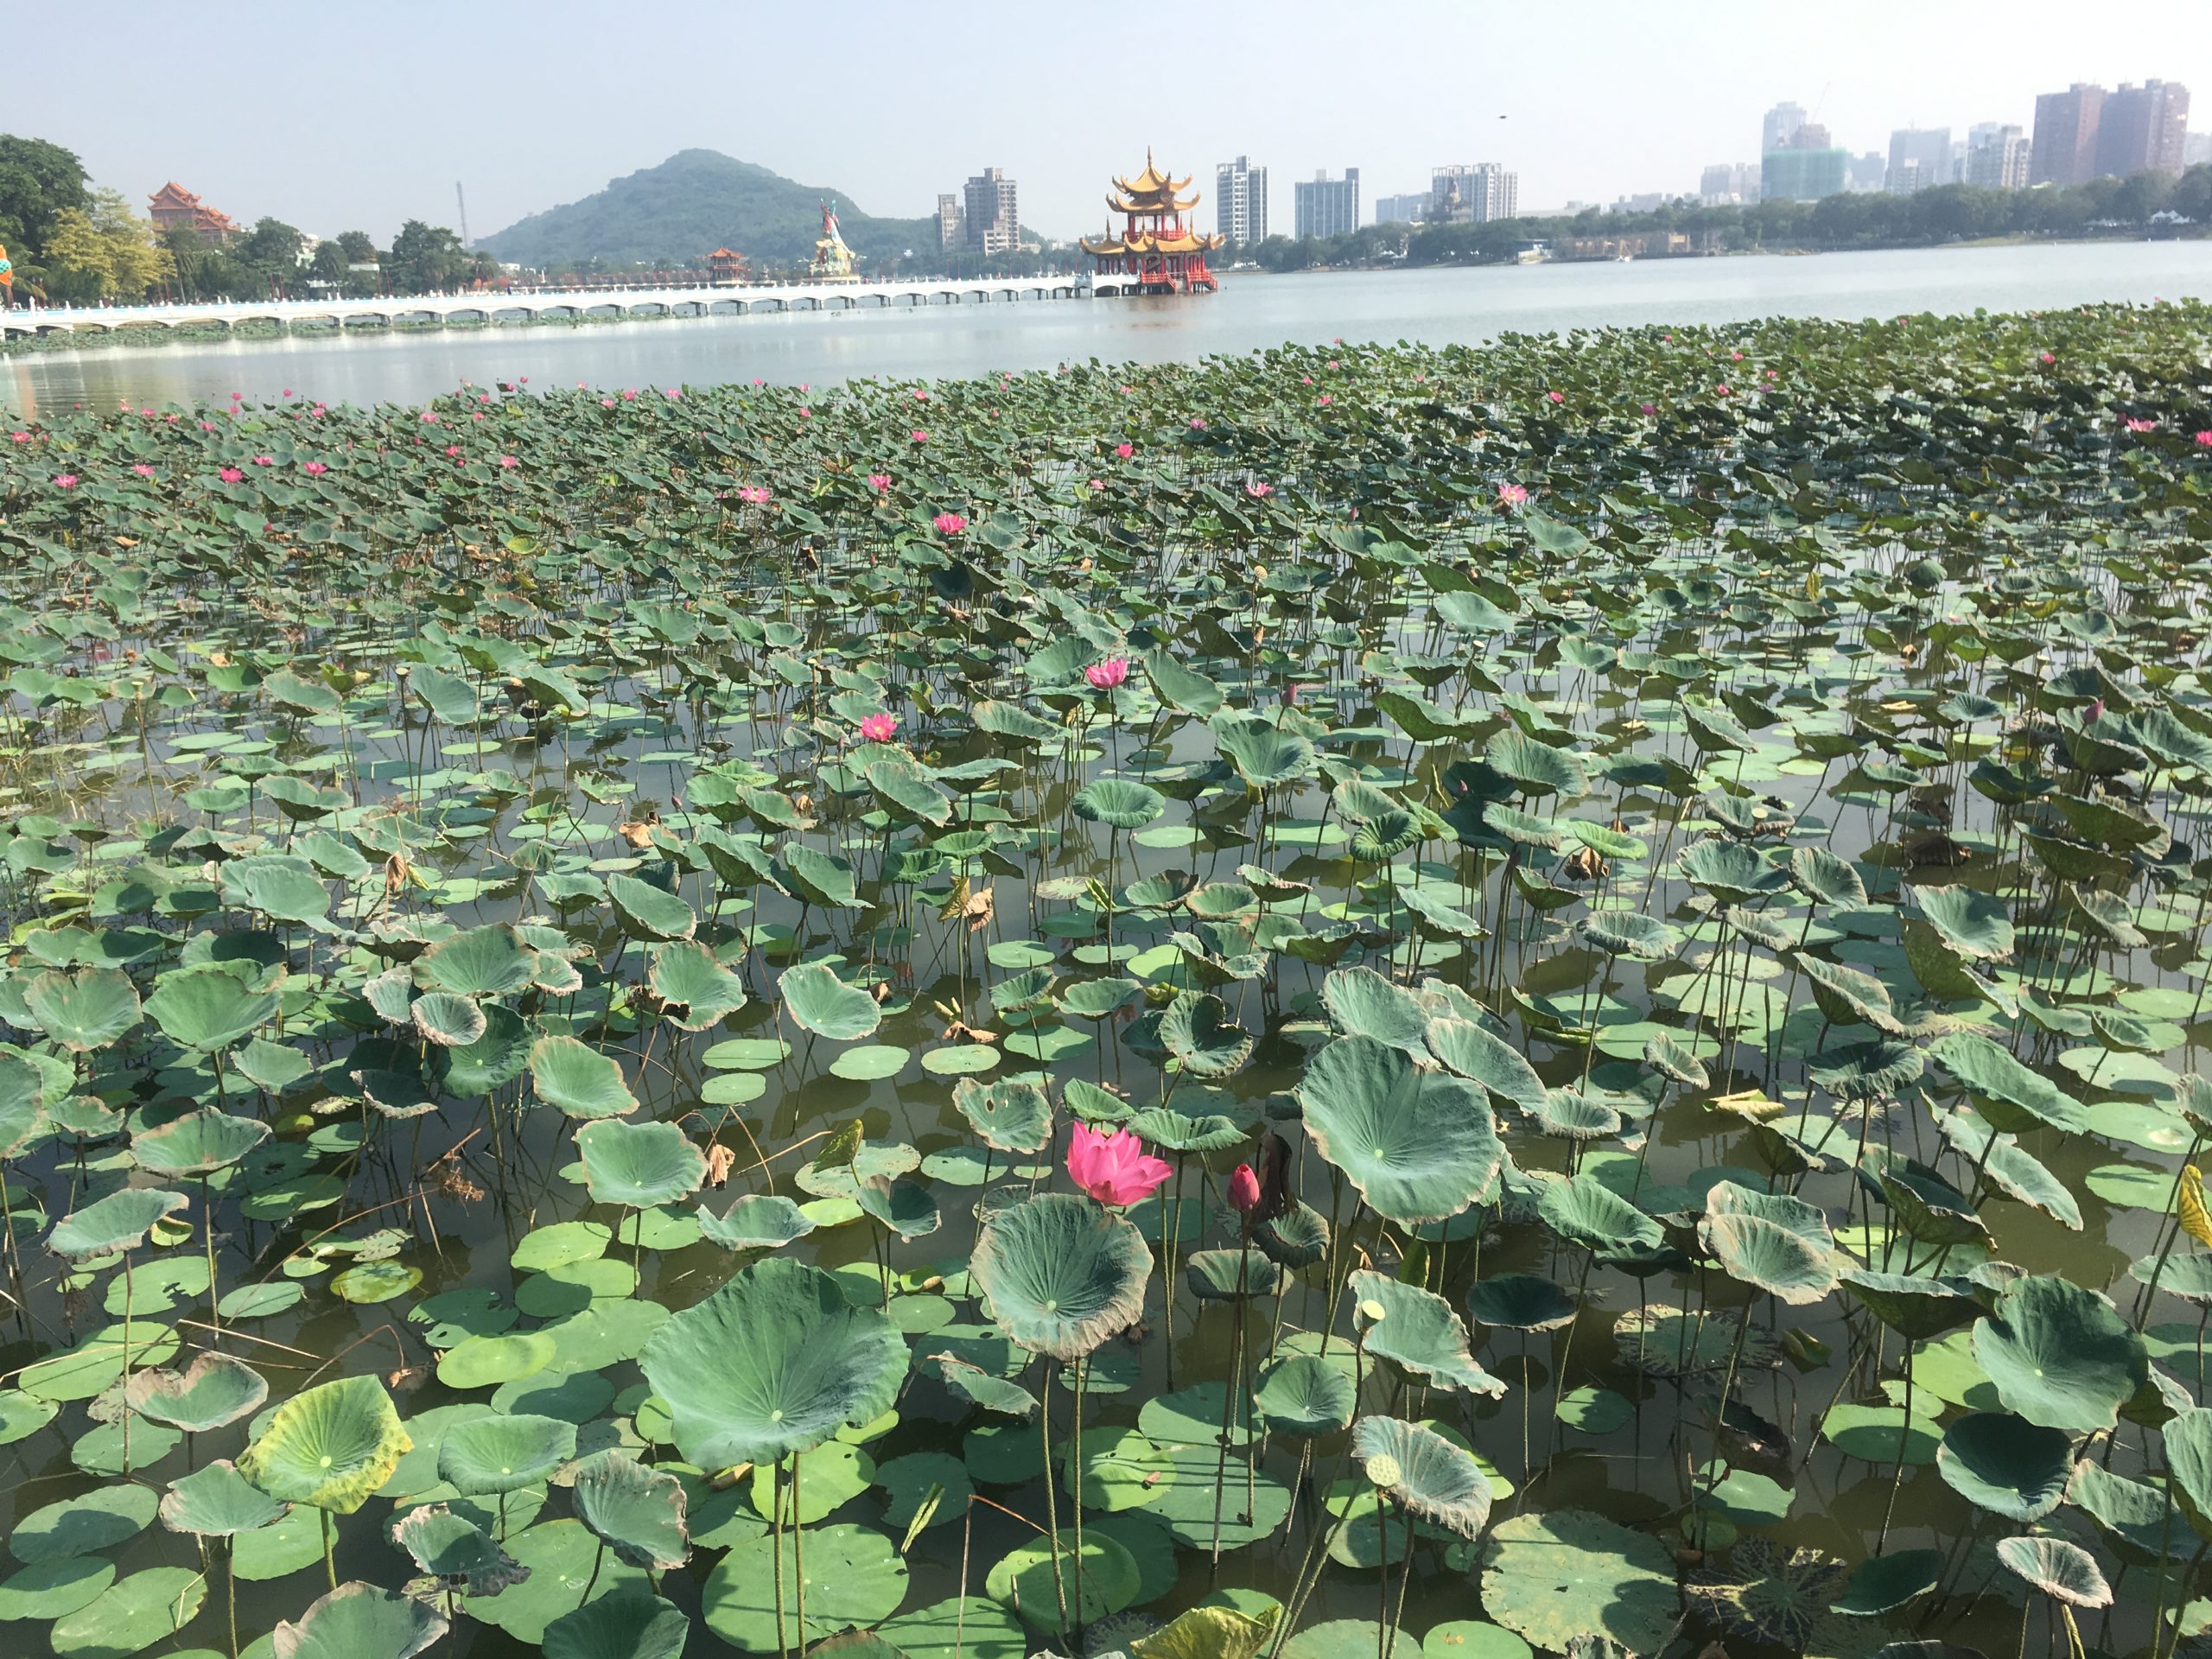 Lotus at Lotus Pond